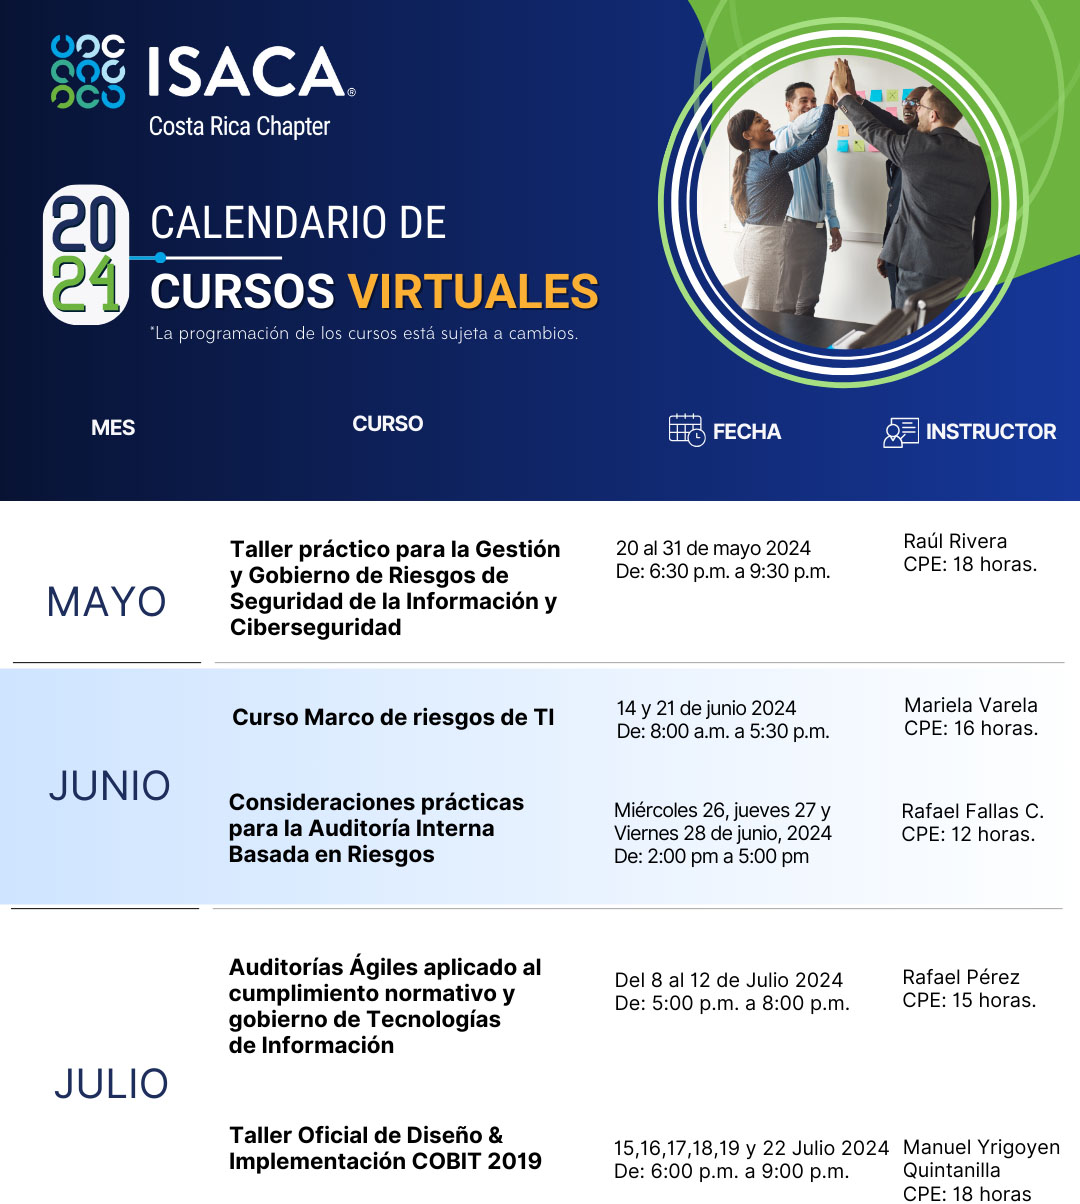 Reserva estas fechas en su agenda - Charlas, cursos, talleres y Eventos de ISACA 2024 